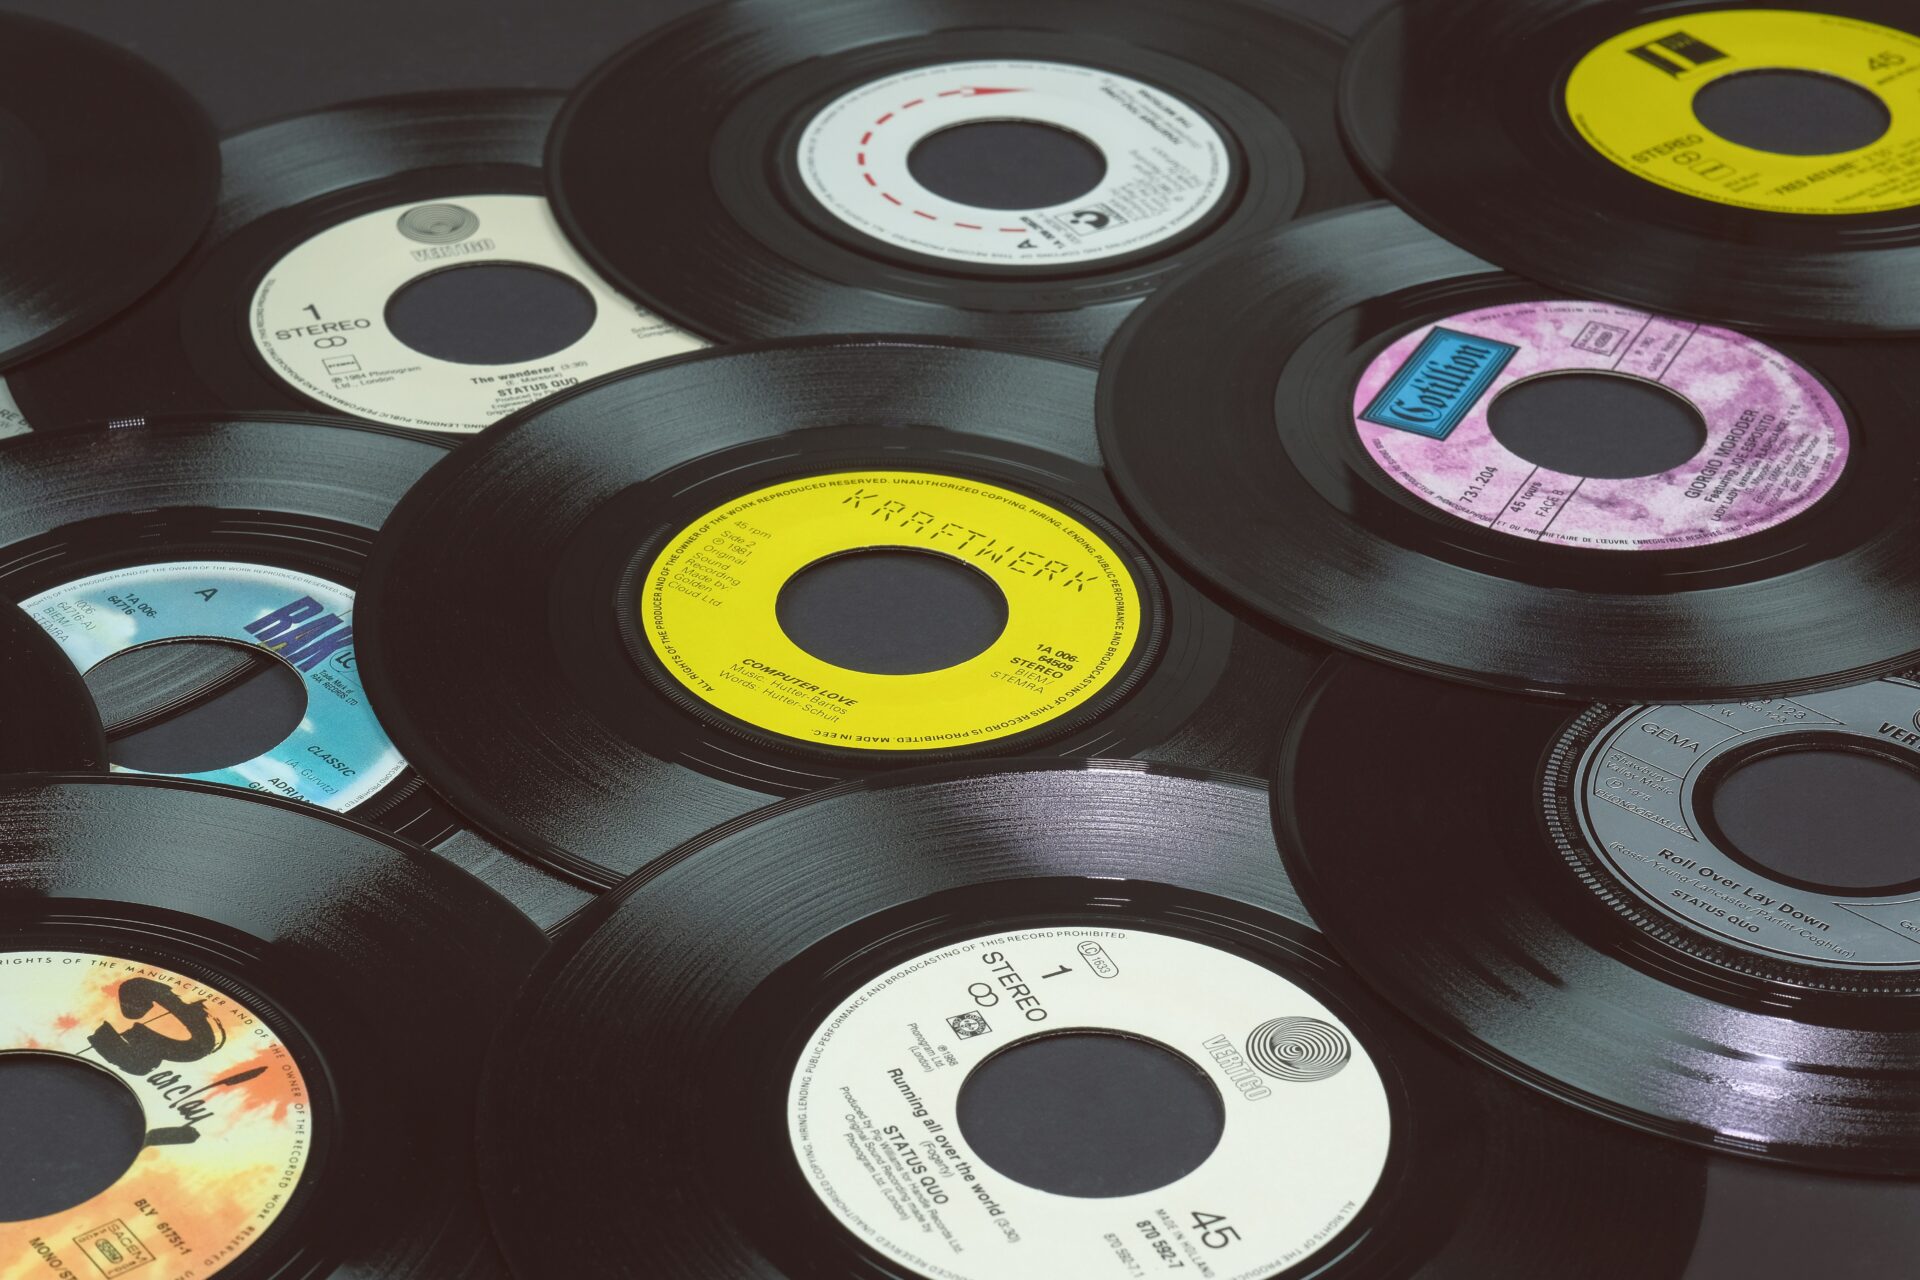 Disco de vinil: descubra quais foram os discos mais famosos